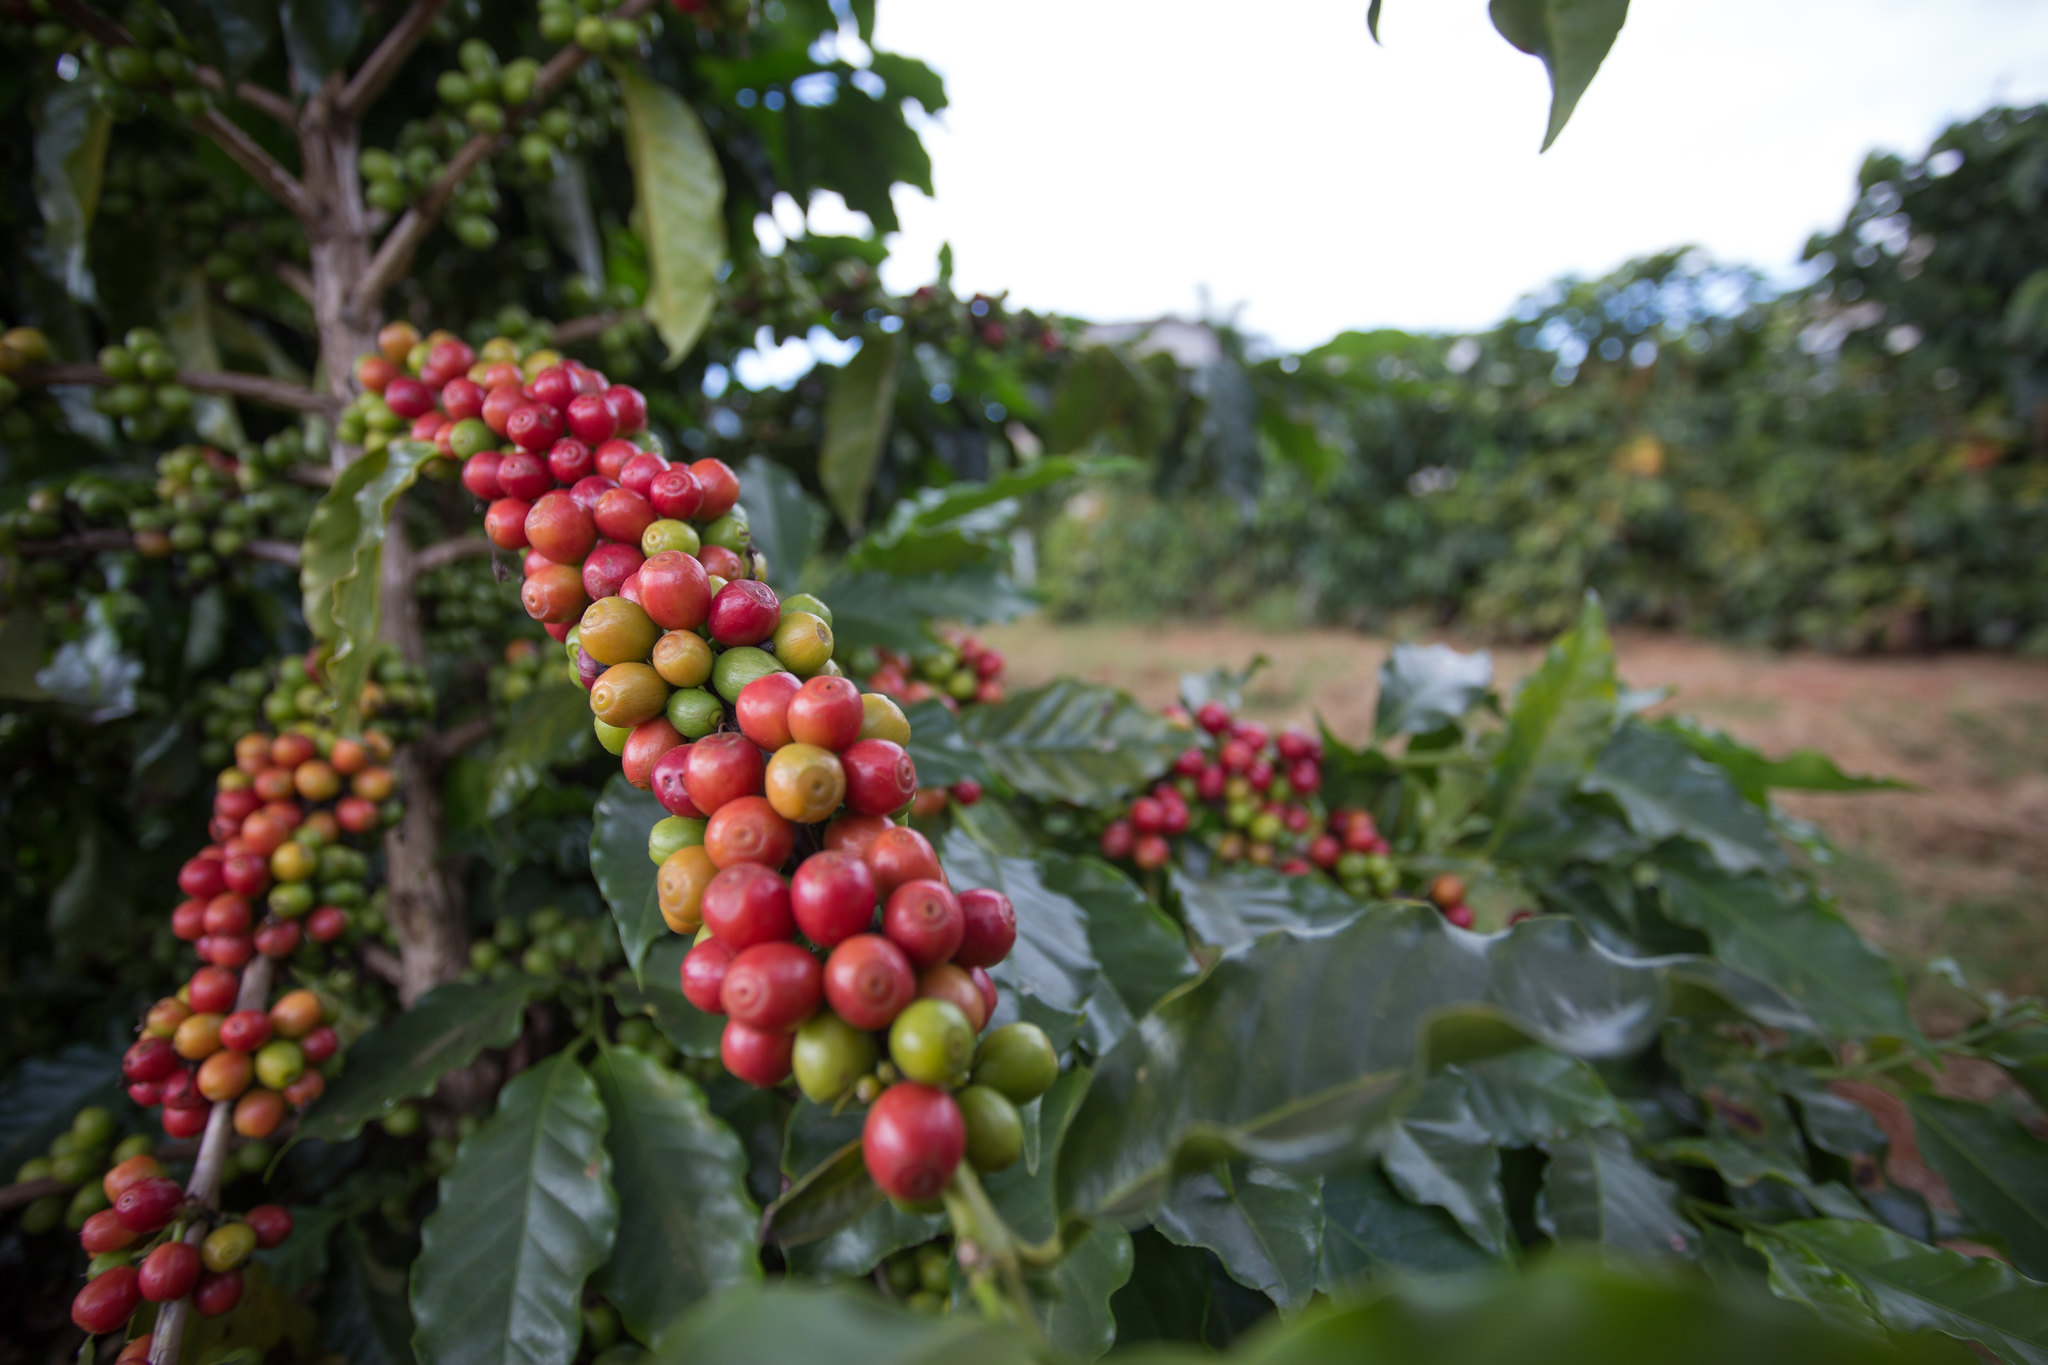 Estudos avaliaram o desempenho de 20 cultivares de café em duas situações: a primeira em solução nutritiva com baixas concentrações de Nitrogênio (N) e a seguinte em solução nutritiva com baixas concentrações de Potássio (K). - Foto: Wenderson Araujo/CNA